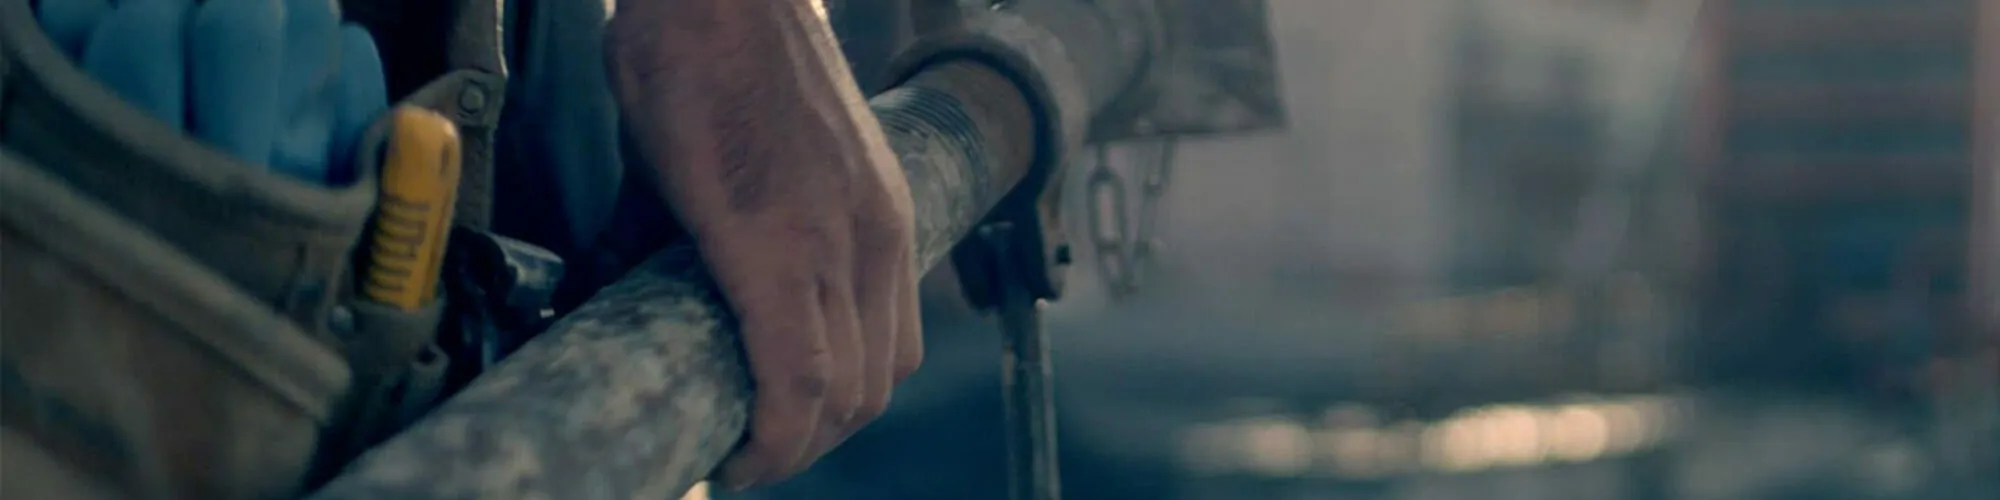 Bild der Hand eines Mannes der einen Stahlträger trägt valantic-case-study-sfs-1